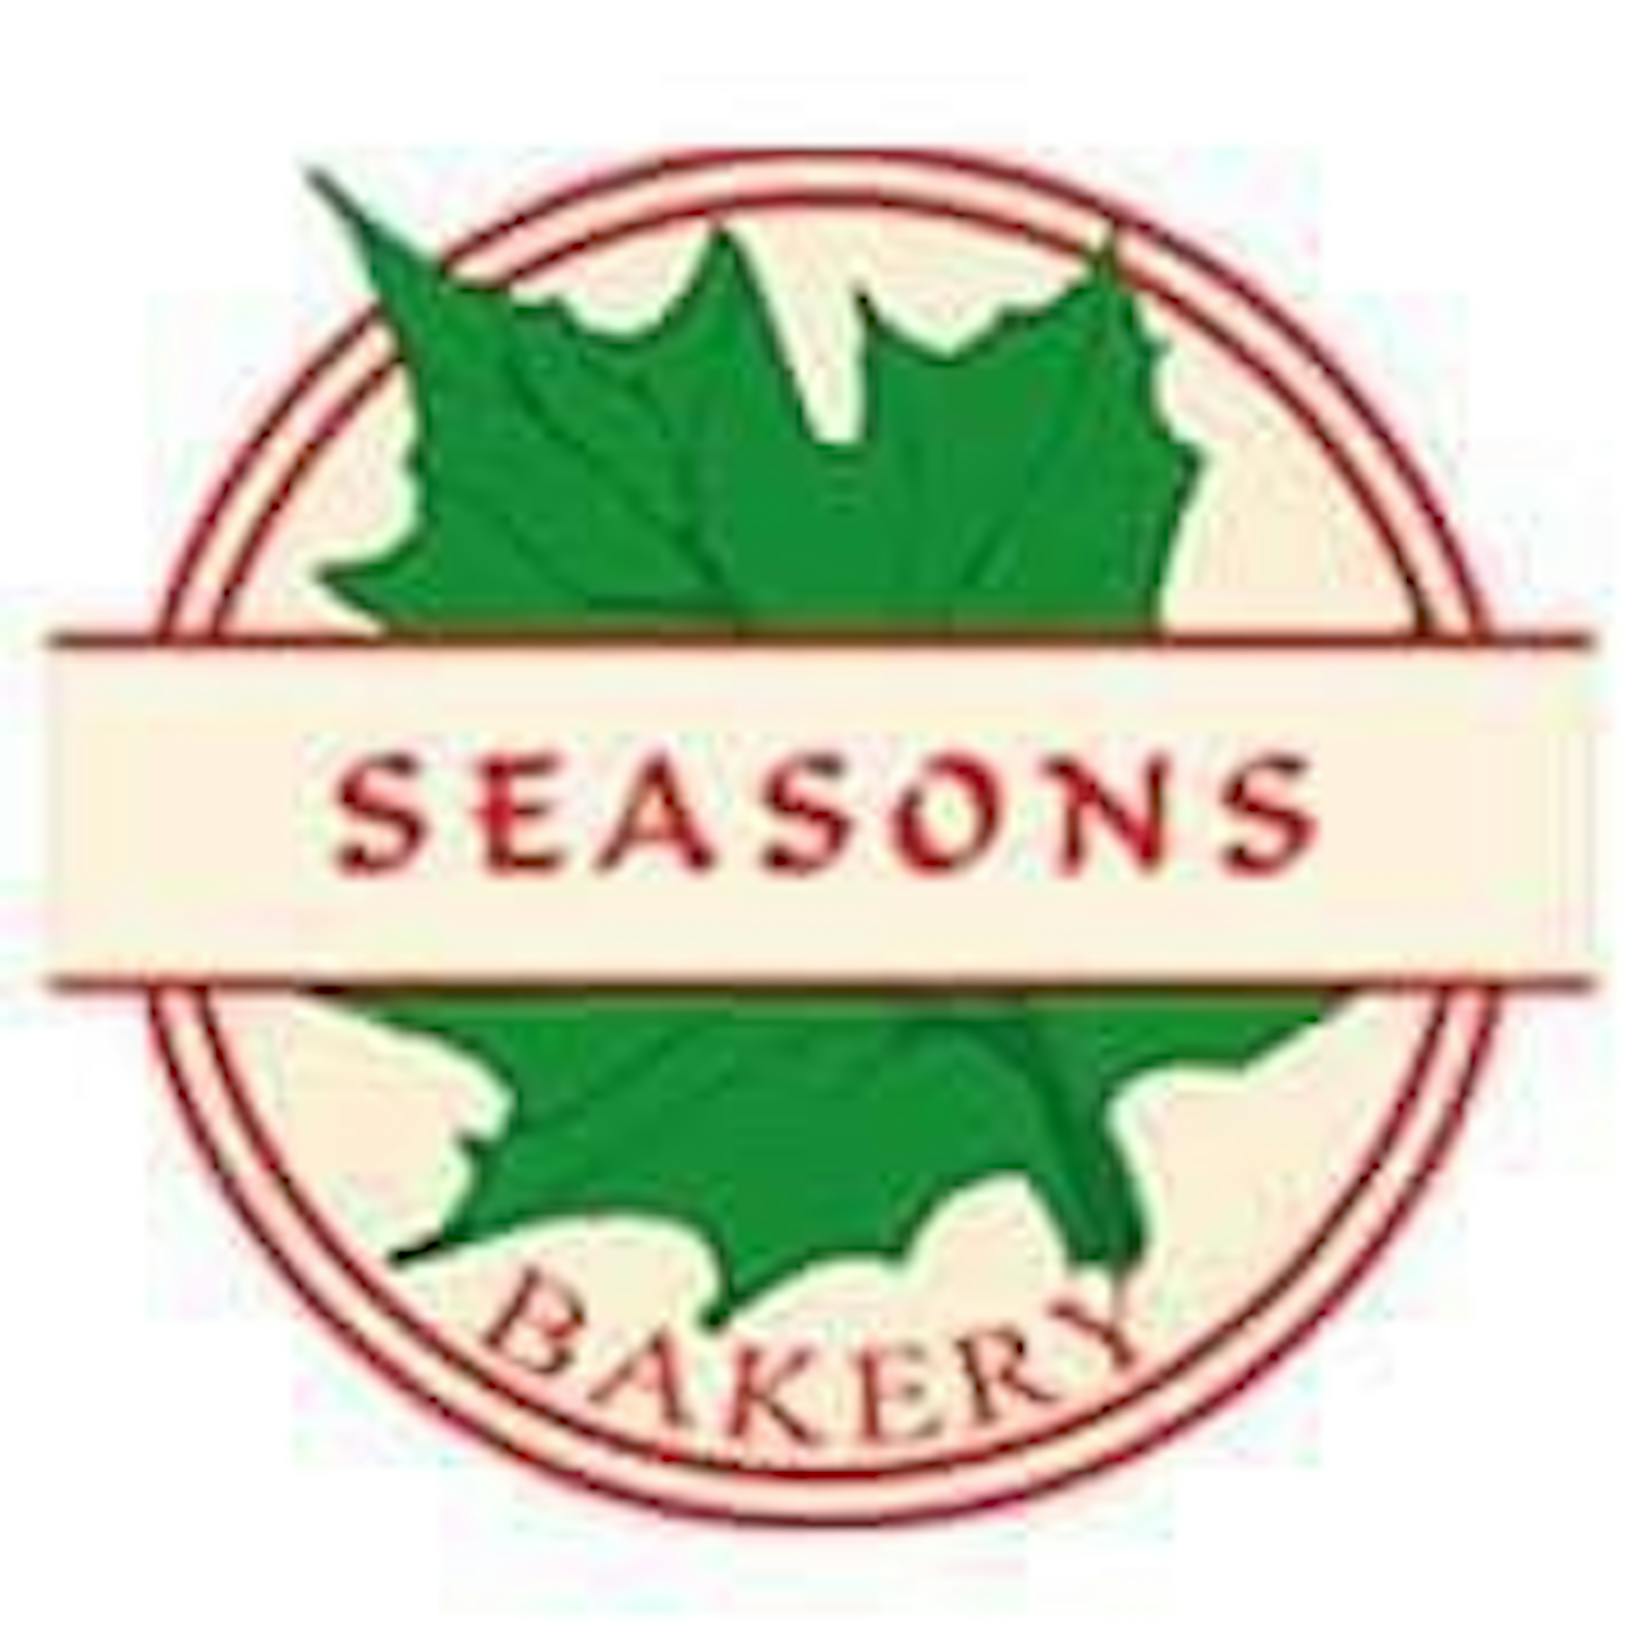 Seasons Bakery & Cafe  | yathar